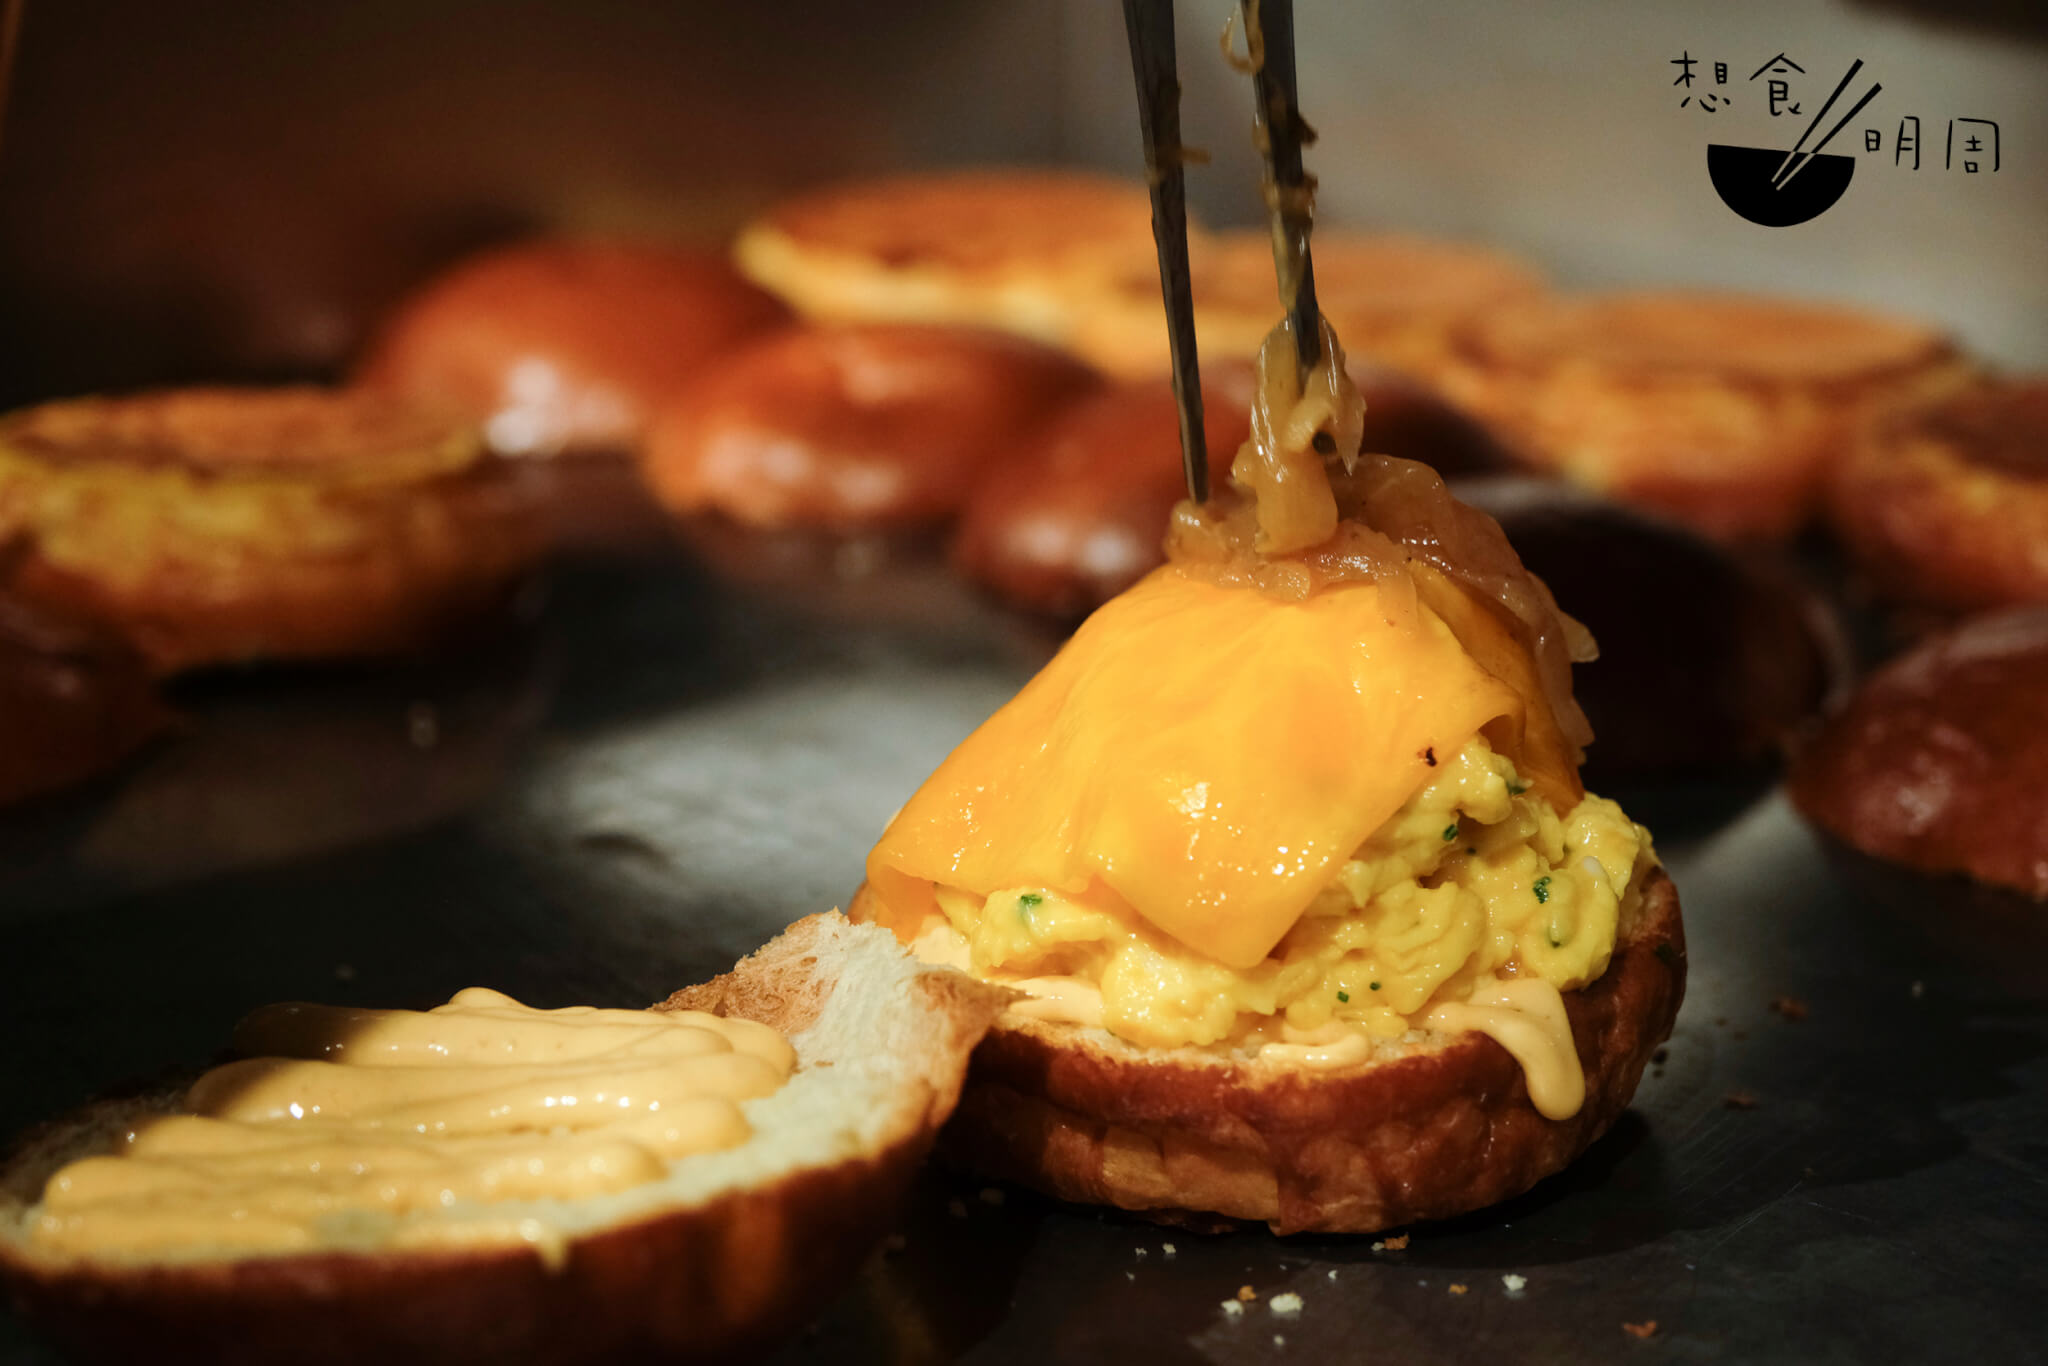 每製作一份三明治都會用上2.25隻紐西蘭有機放養蛋，蛋烹調時間亦不會超過五分鐘。